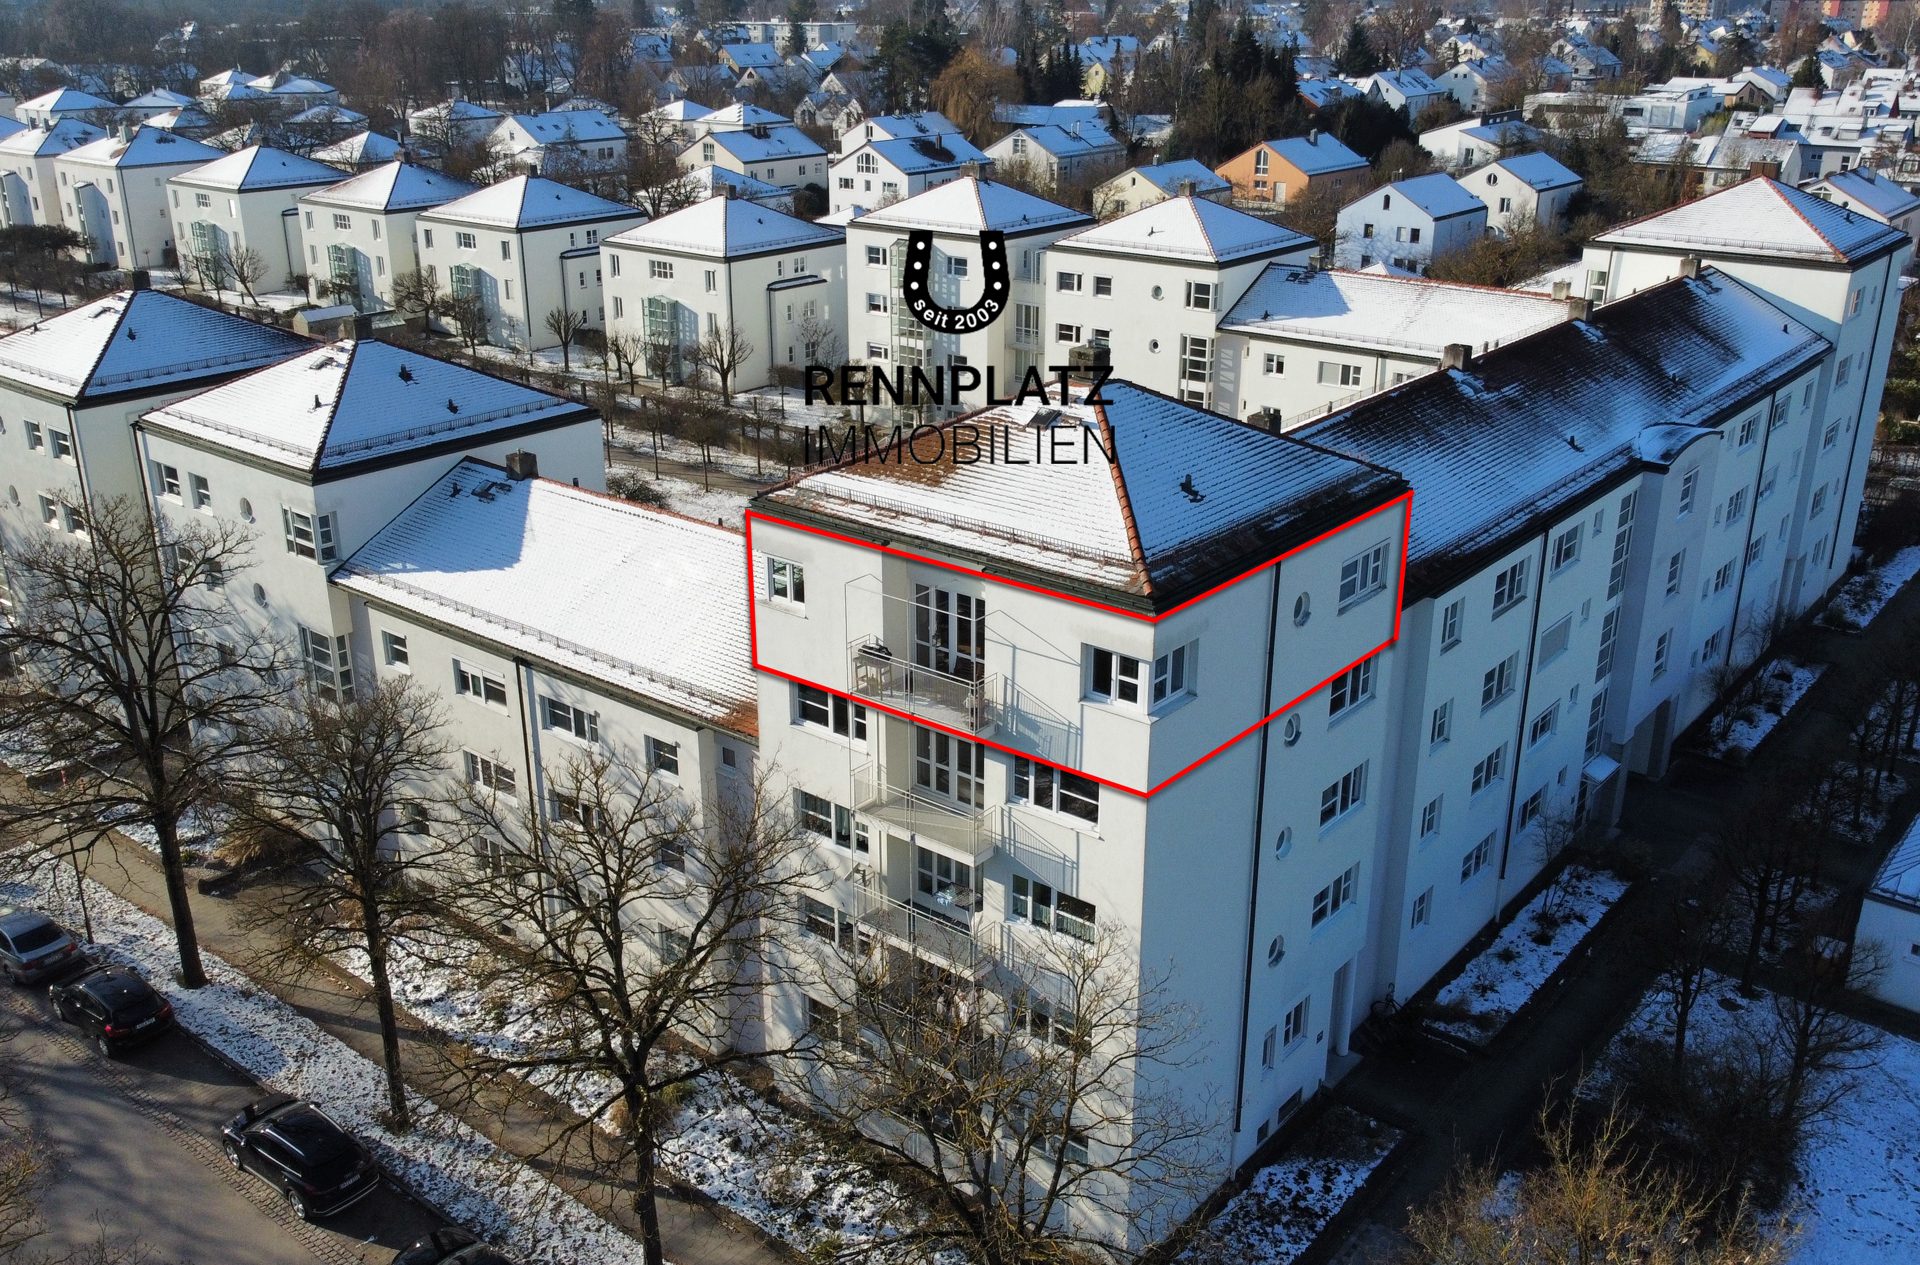 Immobilienangebot - Regensburg - Alle - Attraktive 2,5-Zimmer-Wohnung mit Balkon und traumhaftem Weitblick am Rennplatz.